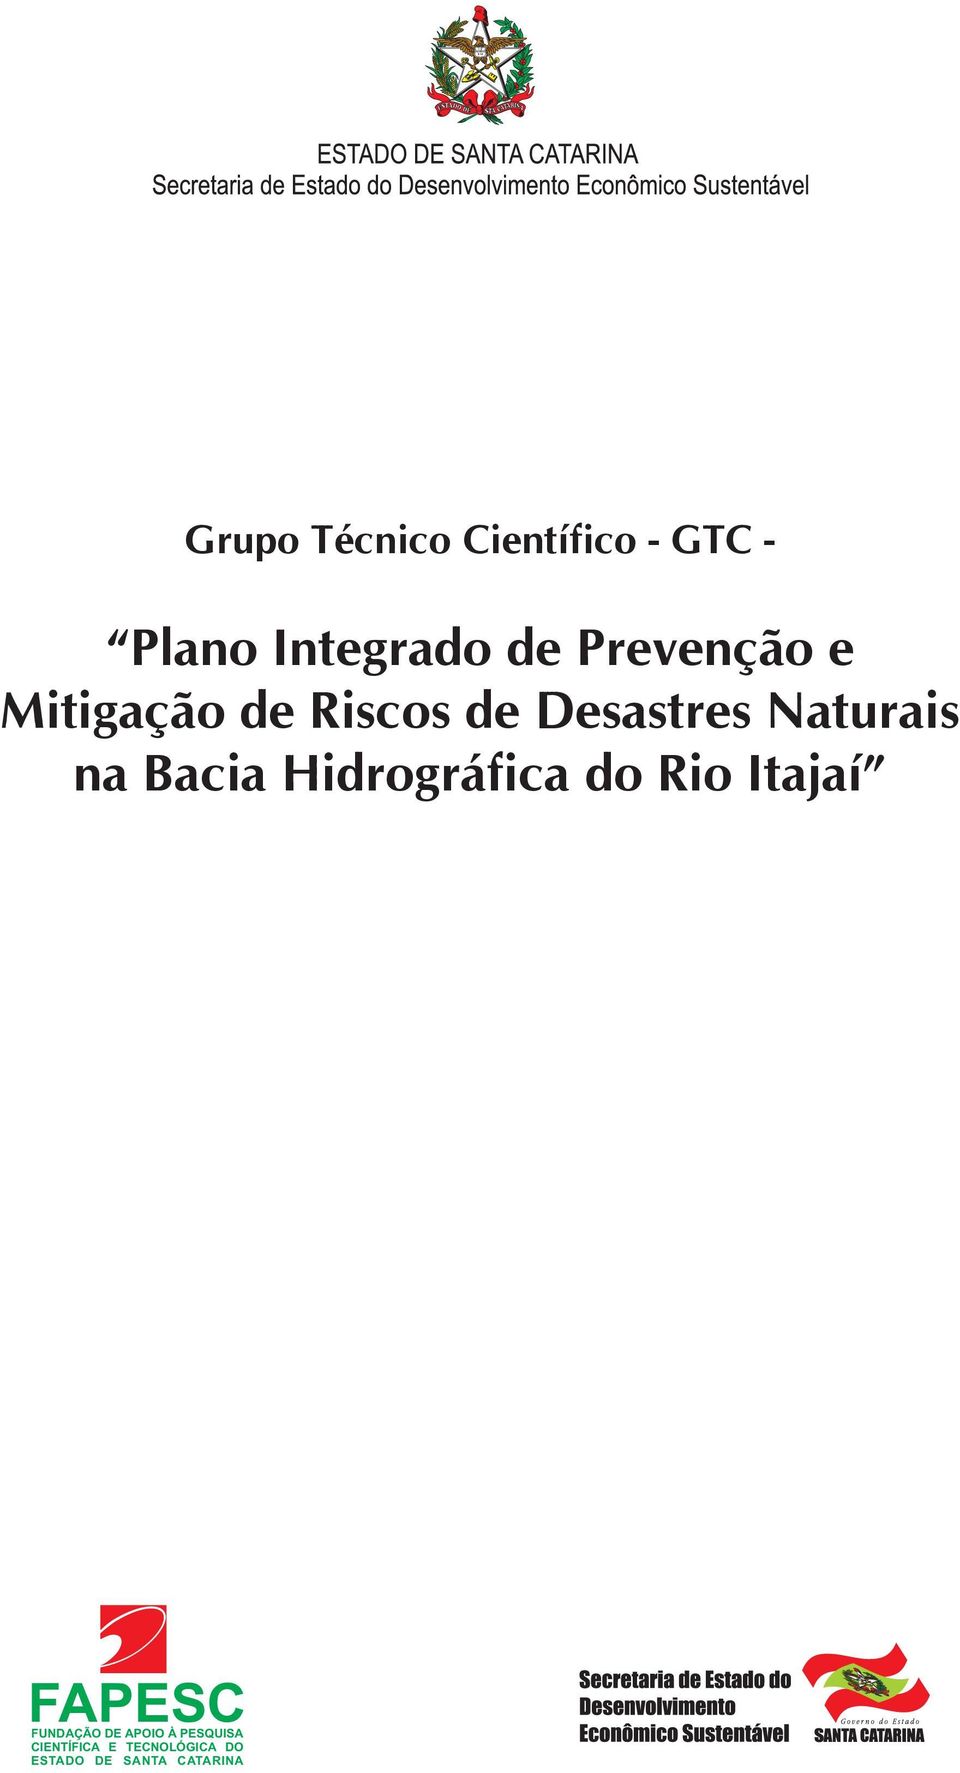 Riscos de Desastres Naturais na Bacia Hidrográfica do Rio Itajaí